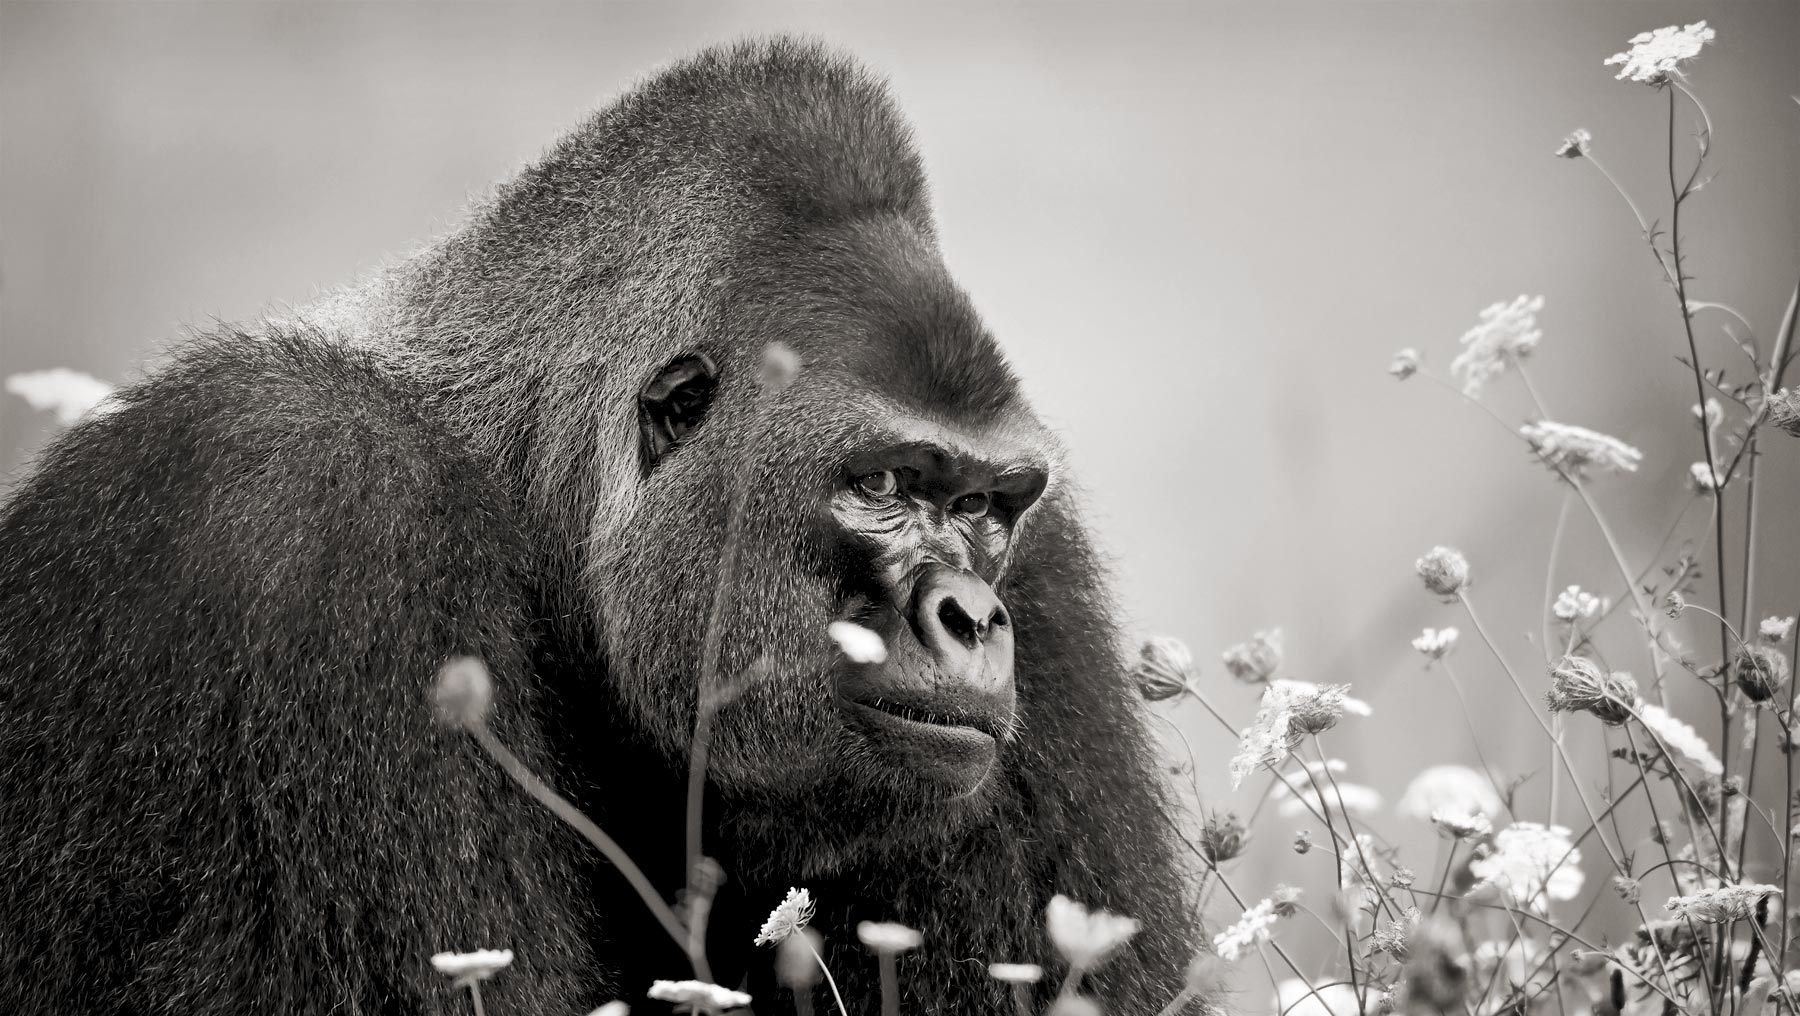 Photographie de gorille de sébastien meys